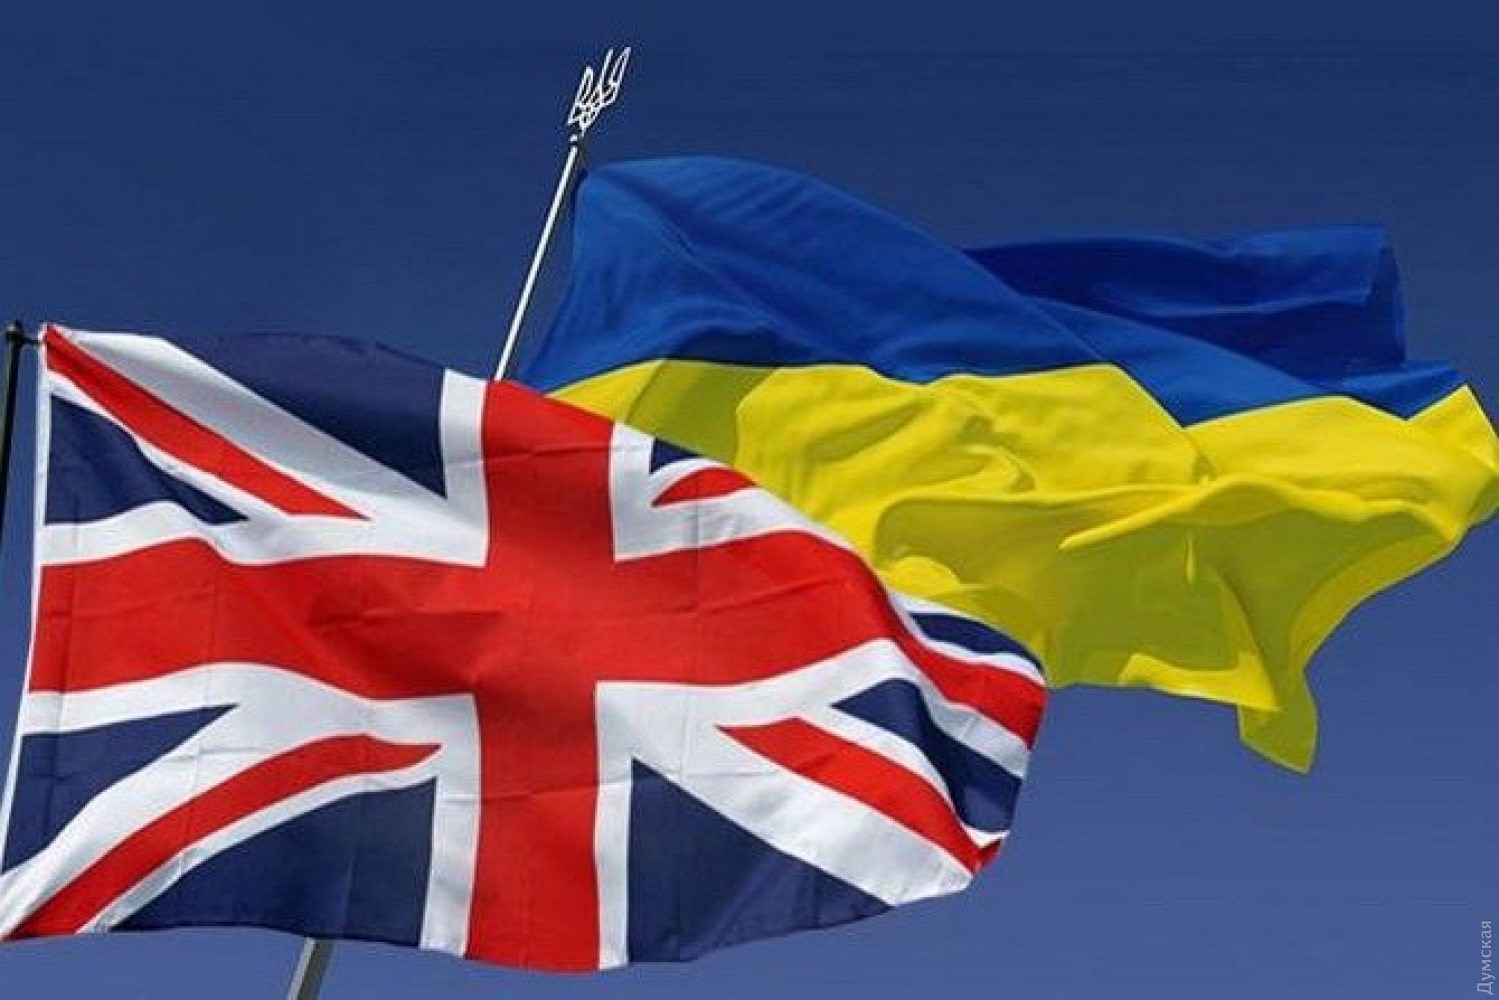 Сразу две европейские страны настроены сотрудничать с Украиной в сфере туризма